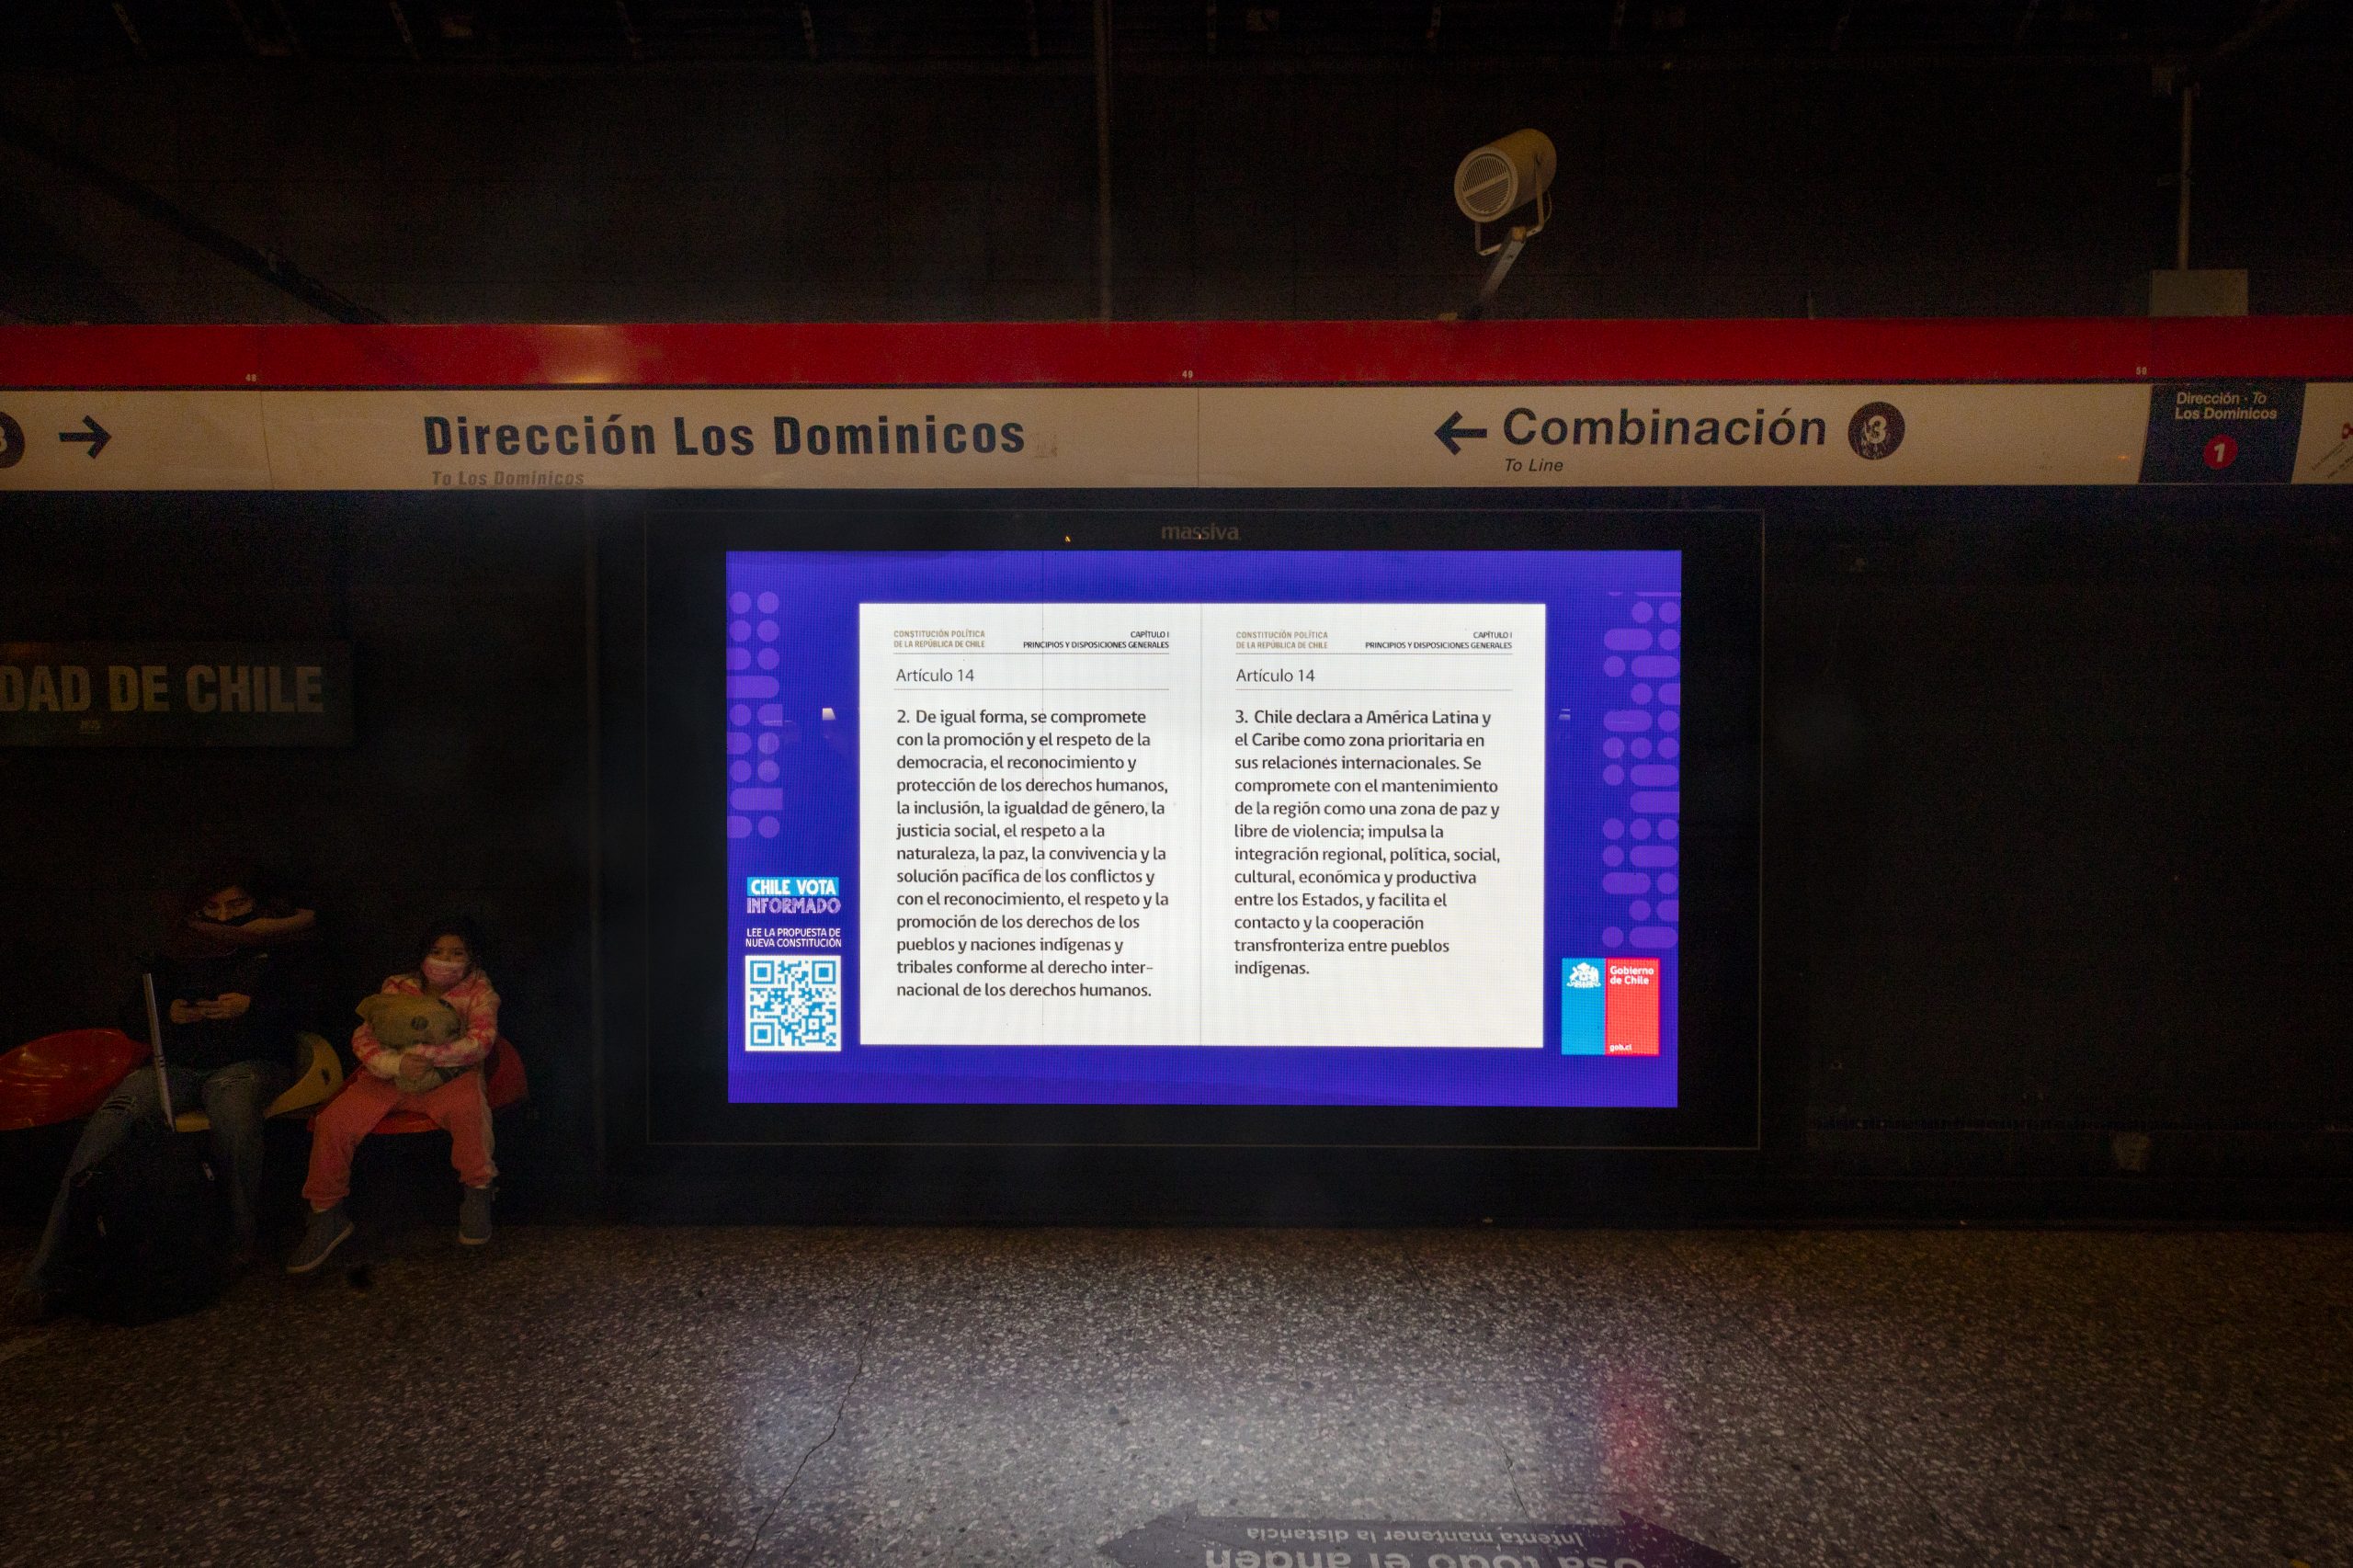  Los hitos de la semana de Chile Vota Informado: lanzamiento del primer spot y entrega de copias de la propuesta de nueva Constitución